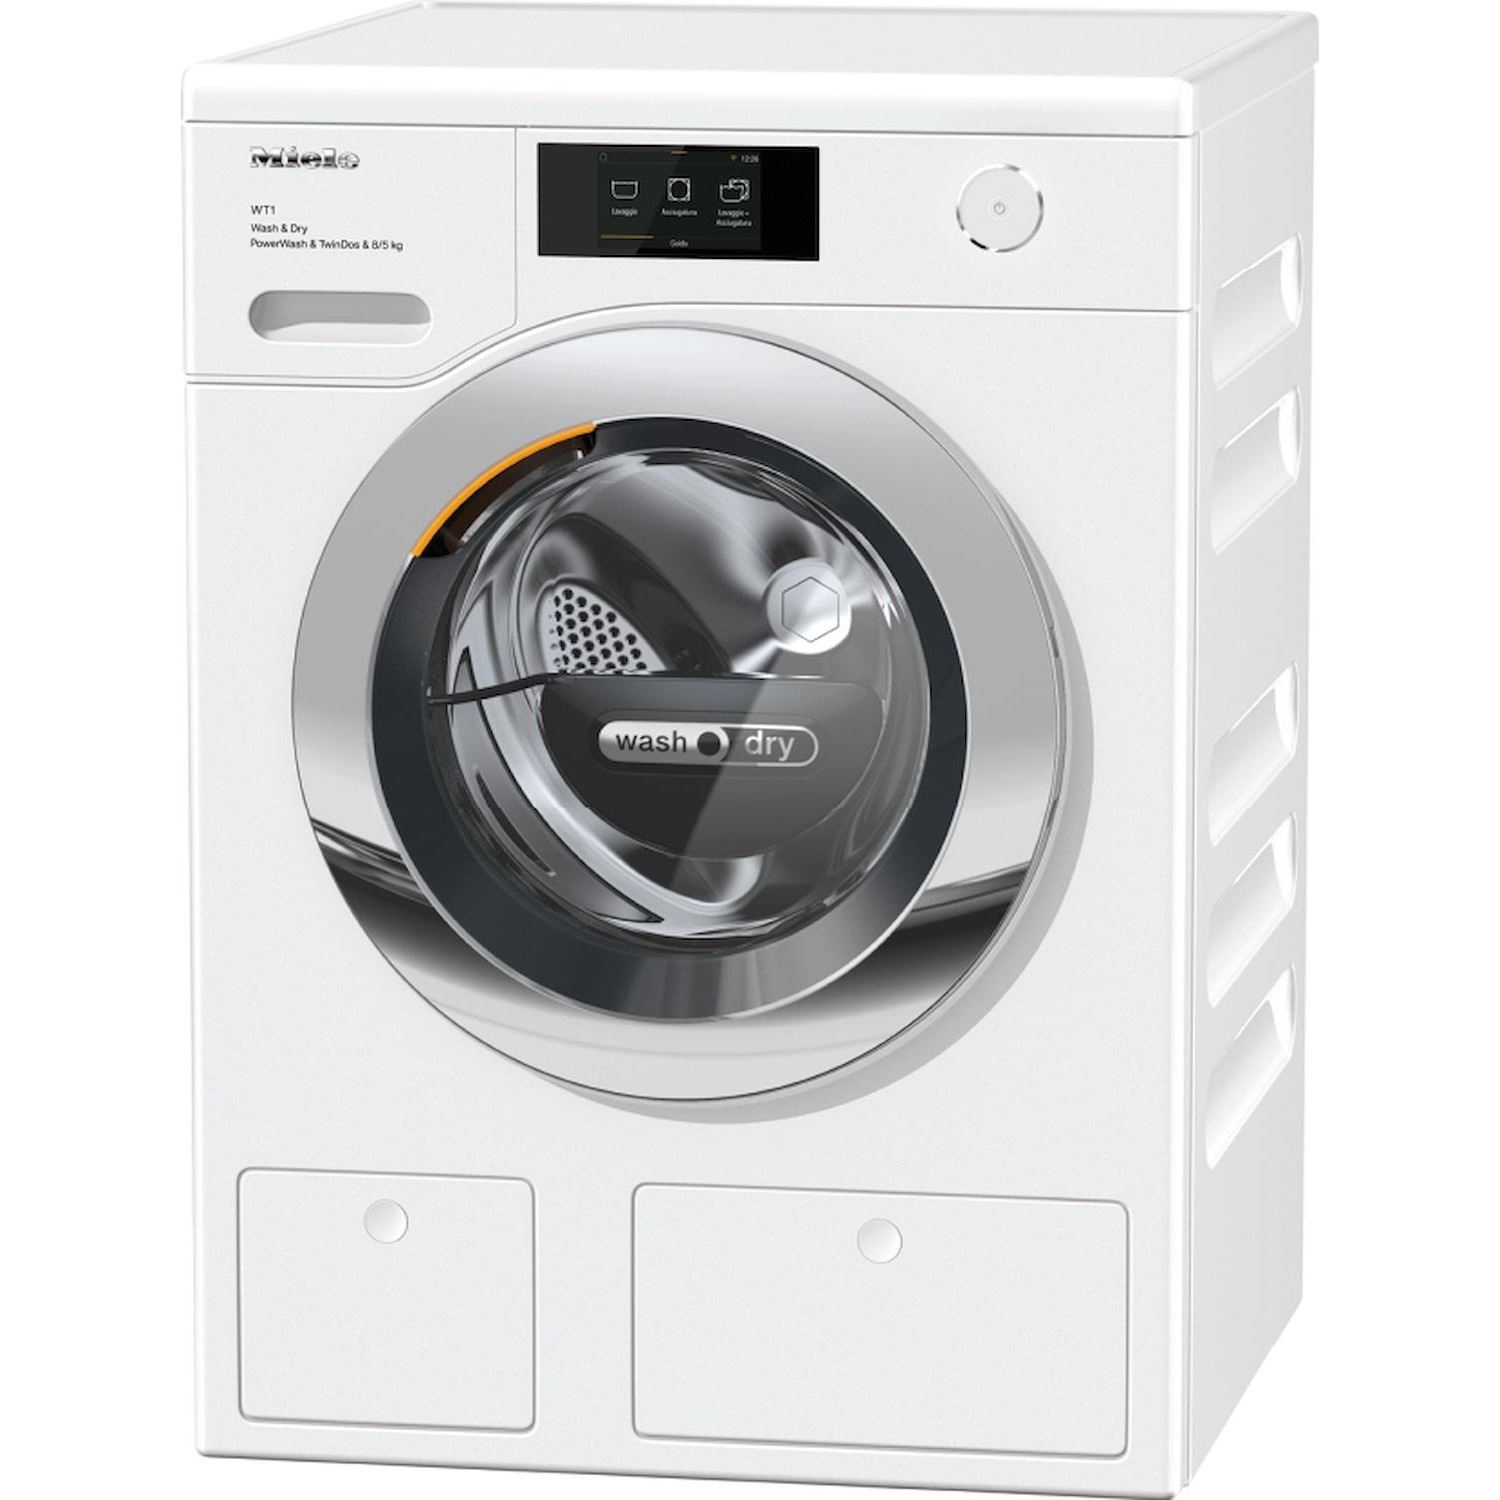 Immagine per Lavasciuga Miele WTR 860 WPM Power Wash 2.0  8kg   lavaggio / 5 kg asciugatura twindos da DIMOStore